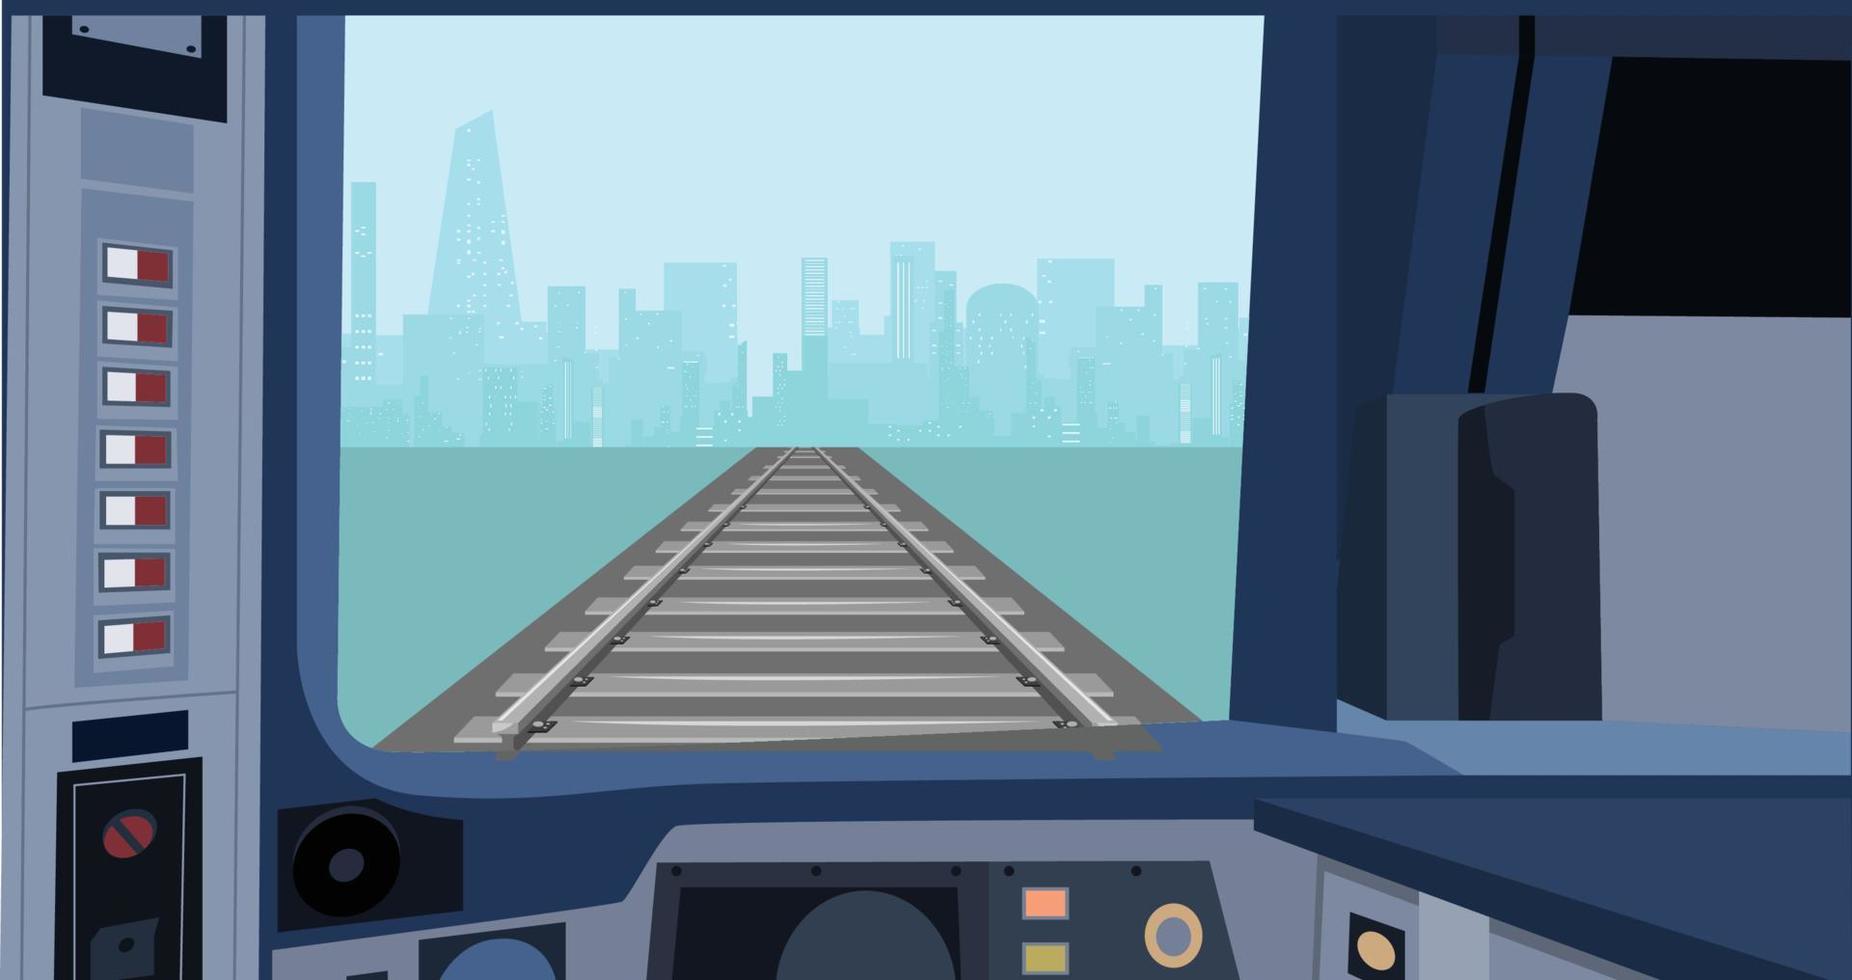 machinist in de cabine van een moderne trein. interieur controle plaats van de trein. binnen zicht. platte vectorillustratie van dashboard. vector